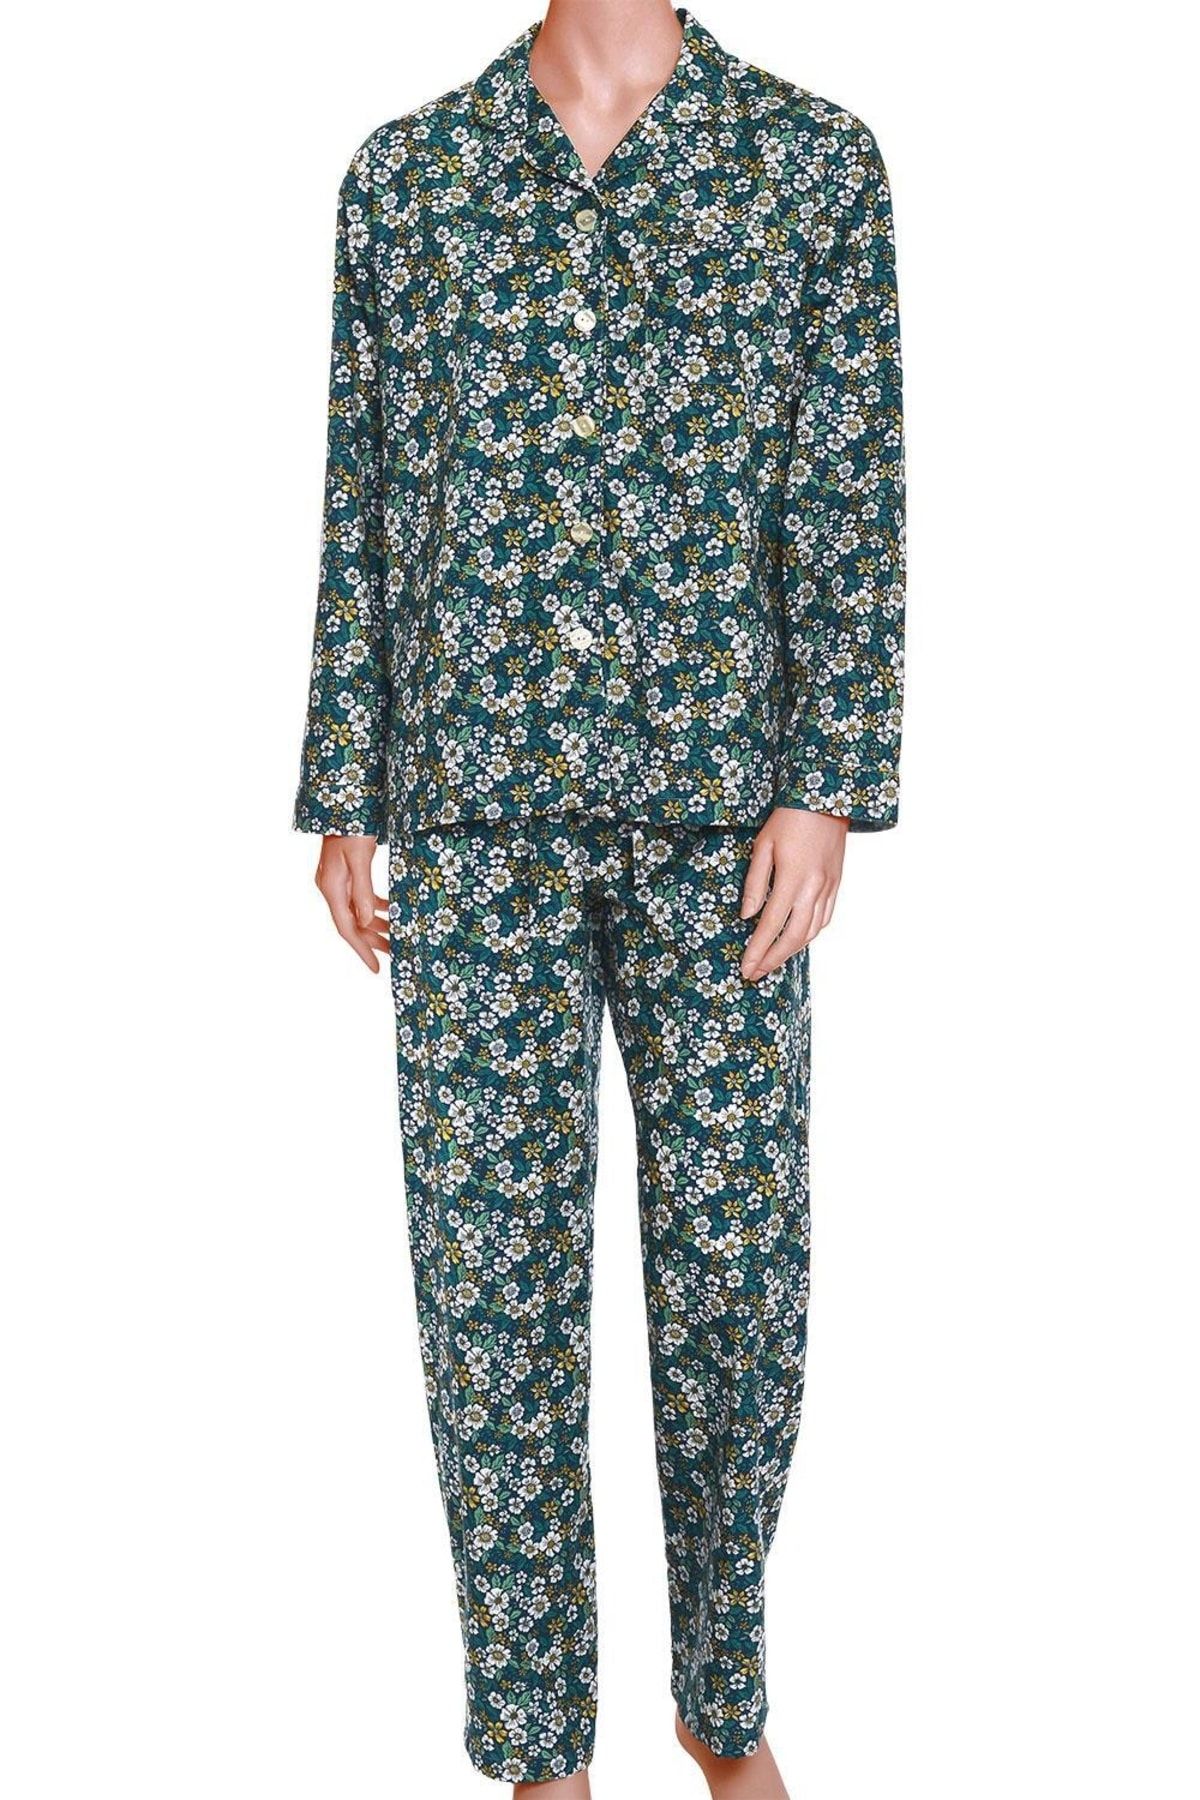 TheDon Poplin Kadın Pijama Takımı Desen 46